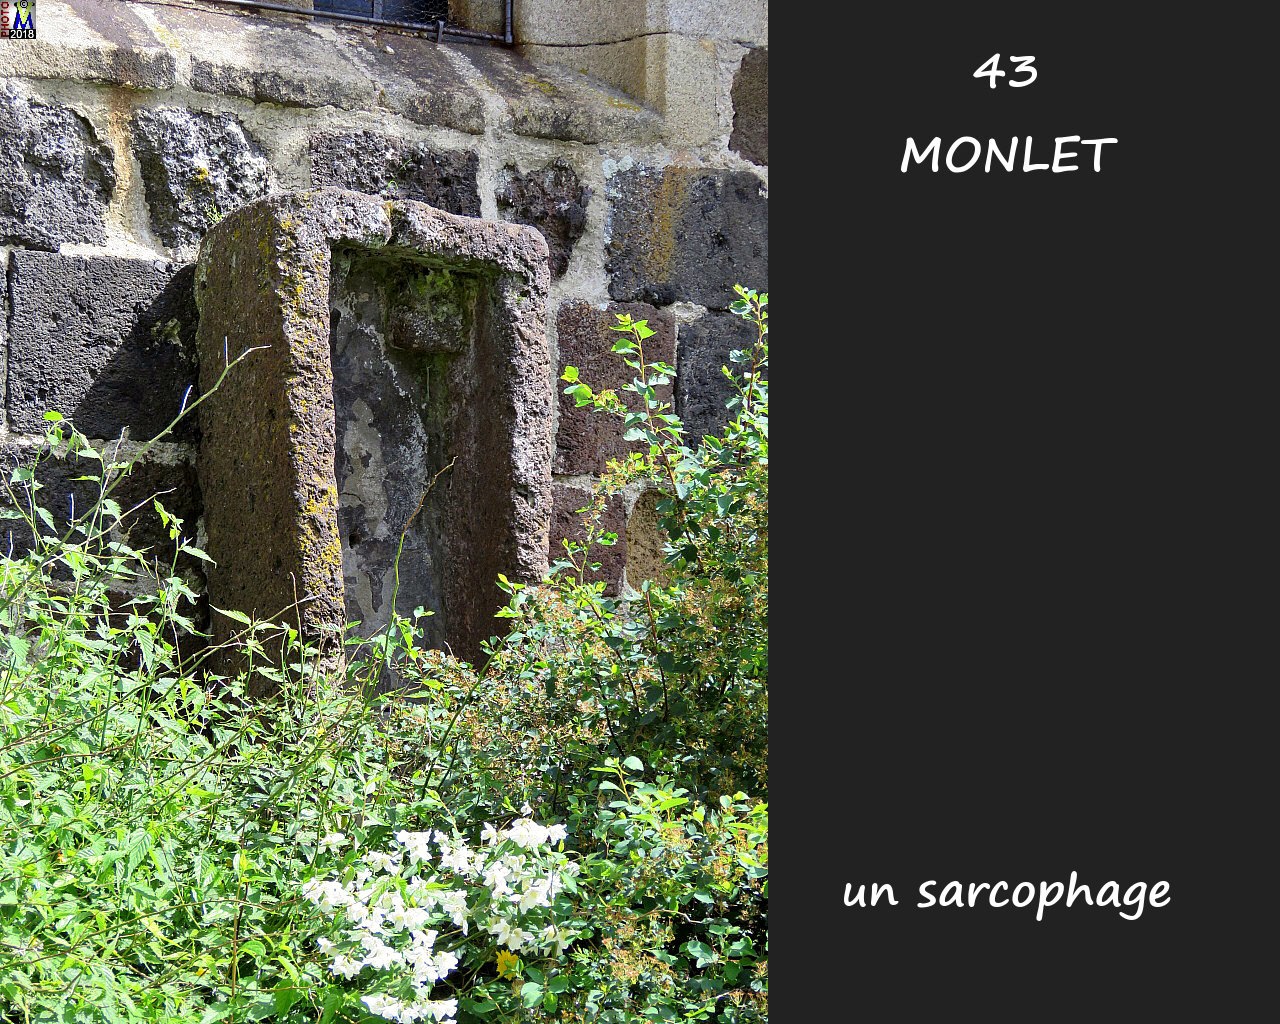 43MONLET_sarcophage_100.jpg